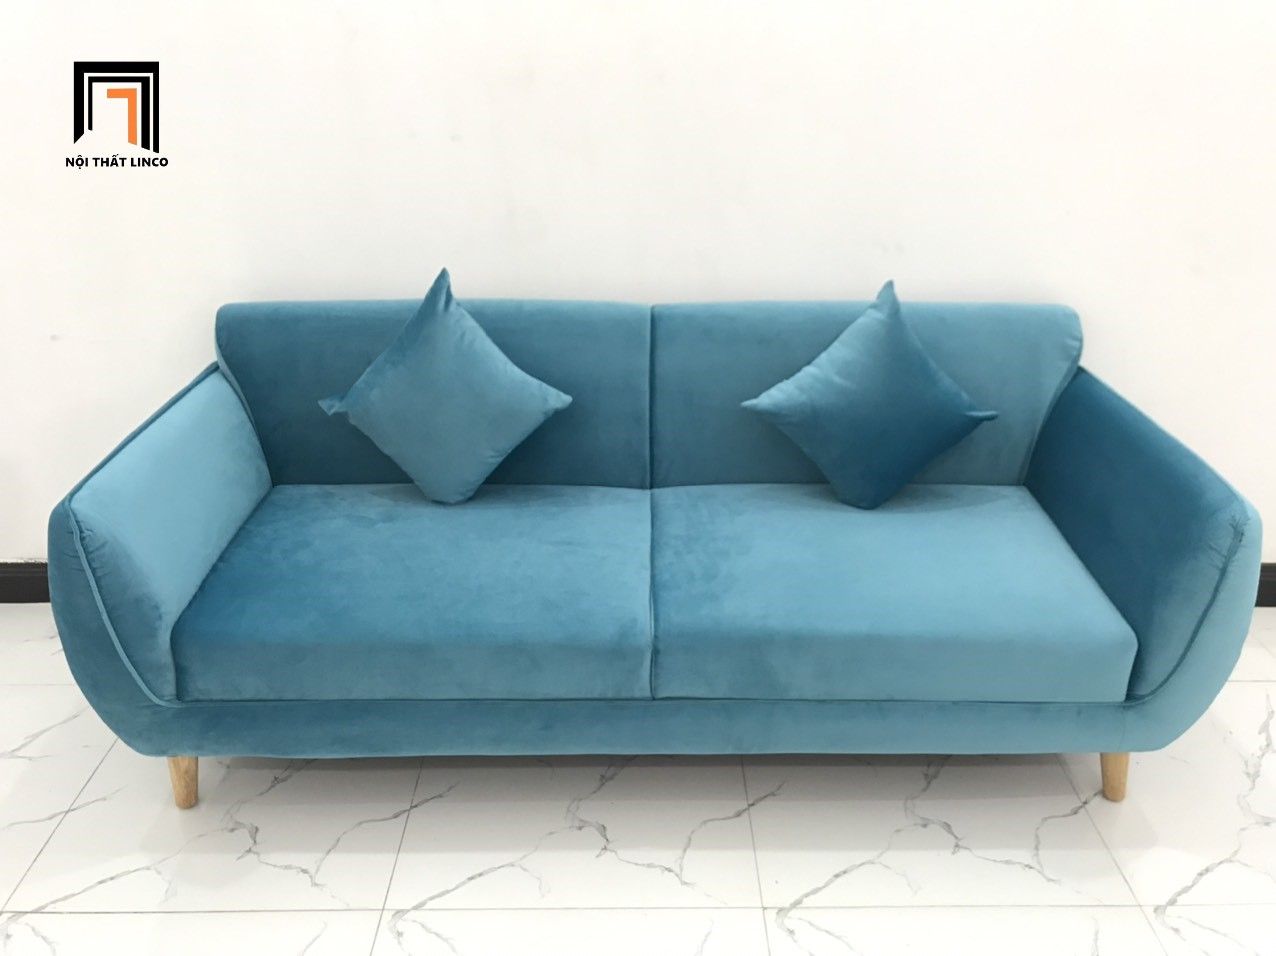  Bộ bàn ghế sofa băng xanh dương nước biển BB dài 1m9 cho căn hộ 